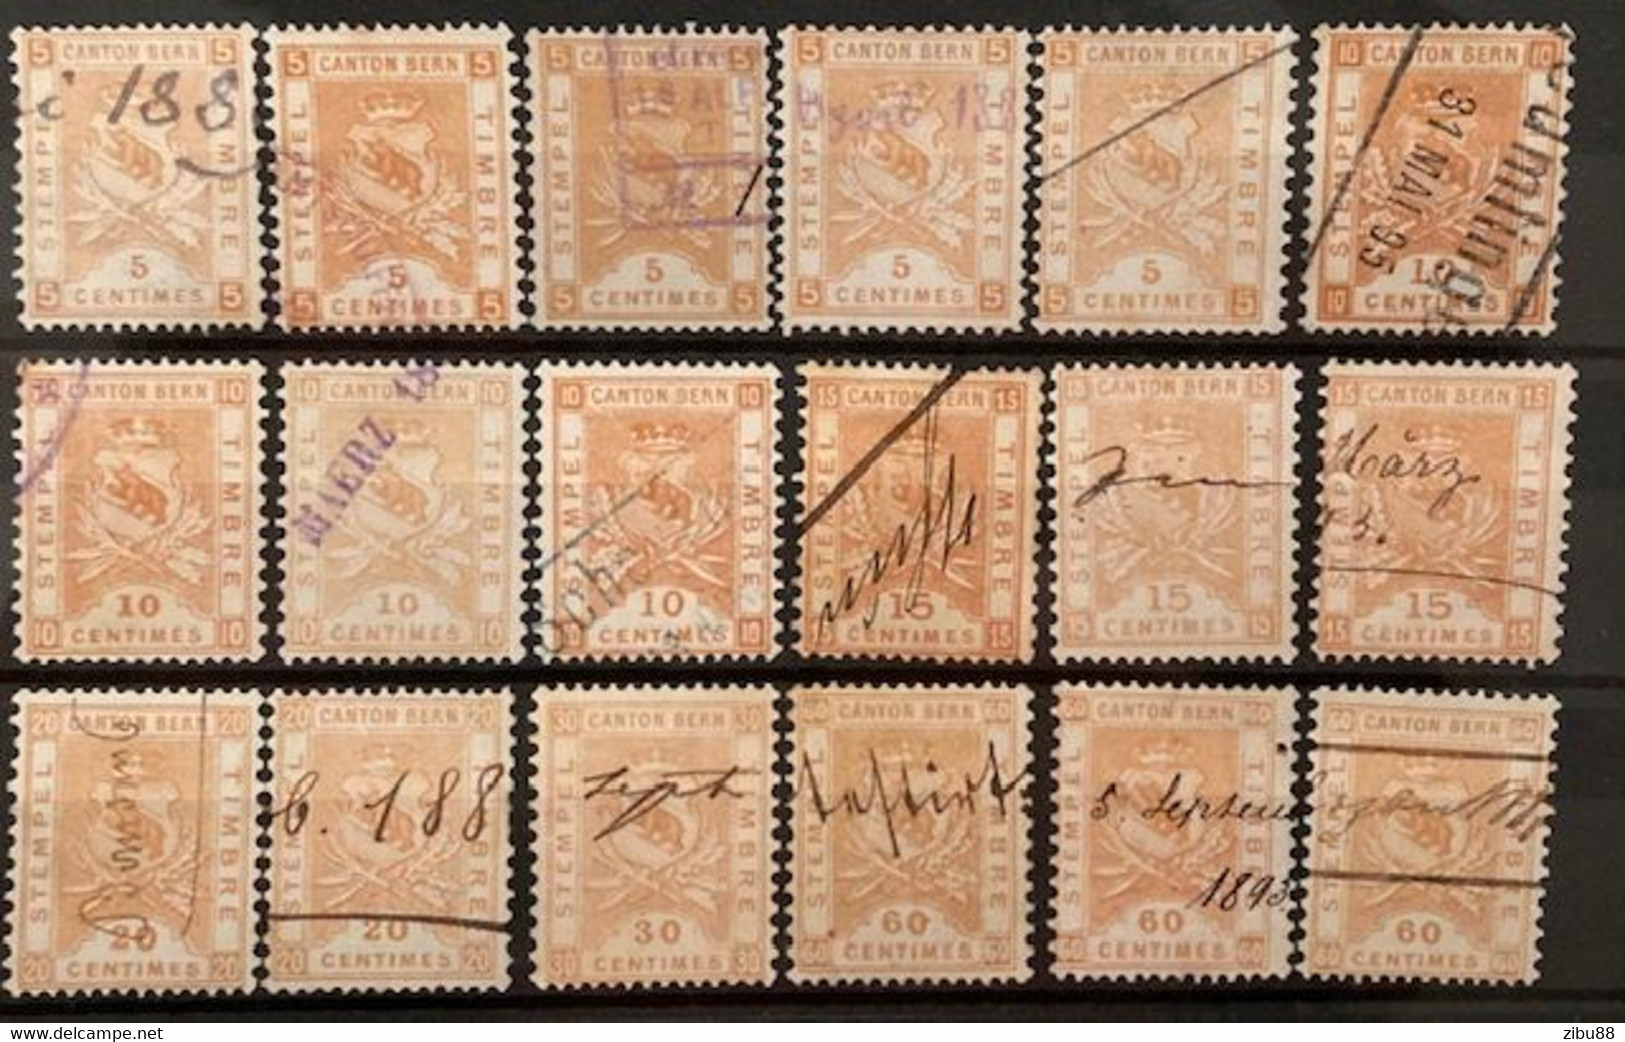 Fiskalmarken / Revenue Stamp Switzerland - Kanton Bern Steckkarte Stempelmarken, Verschiedene Werte - Fiscaux